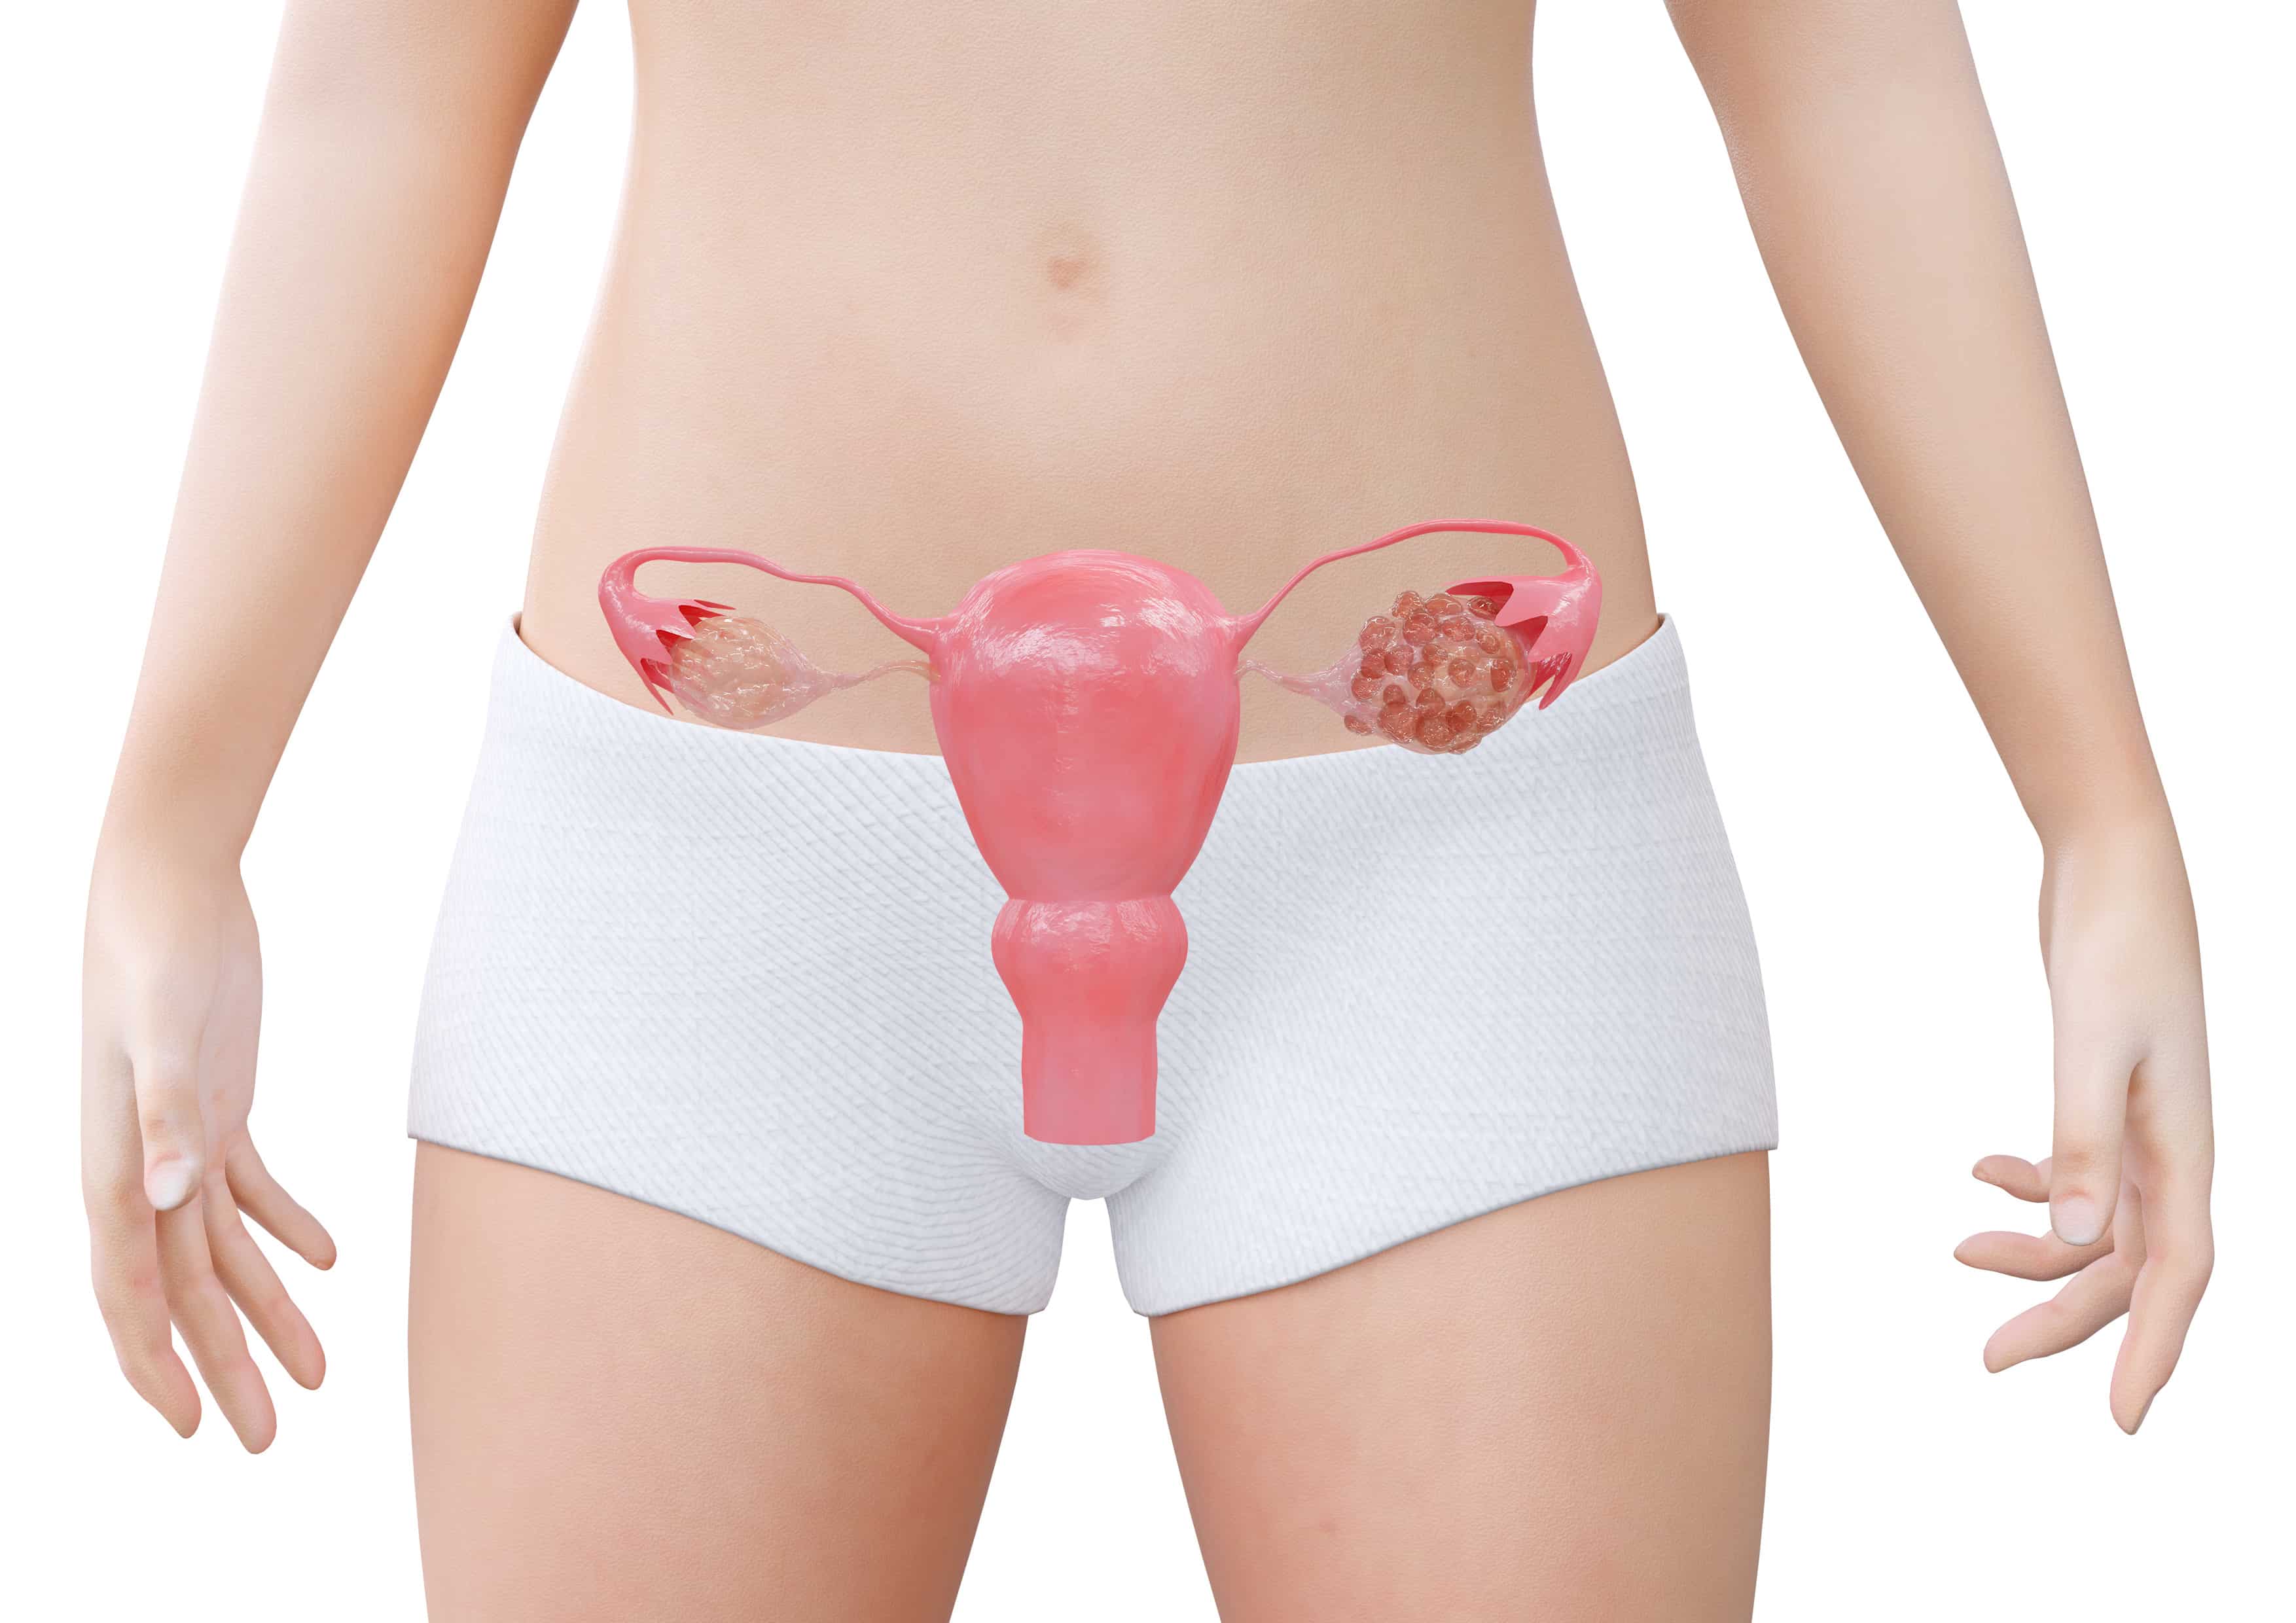 Menstruação irregular e SOP: Como regular?